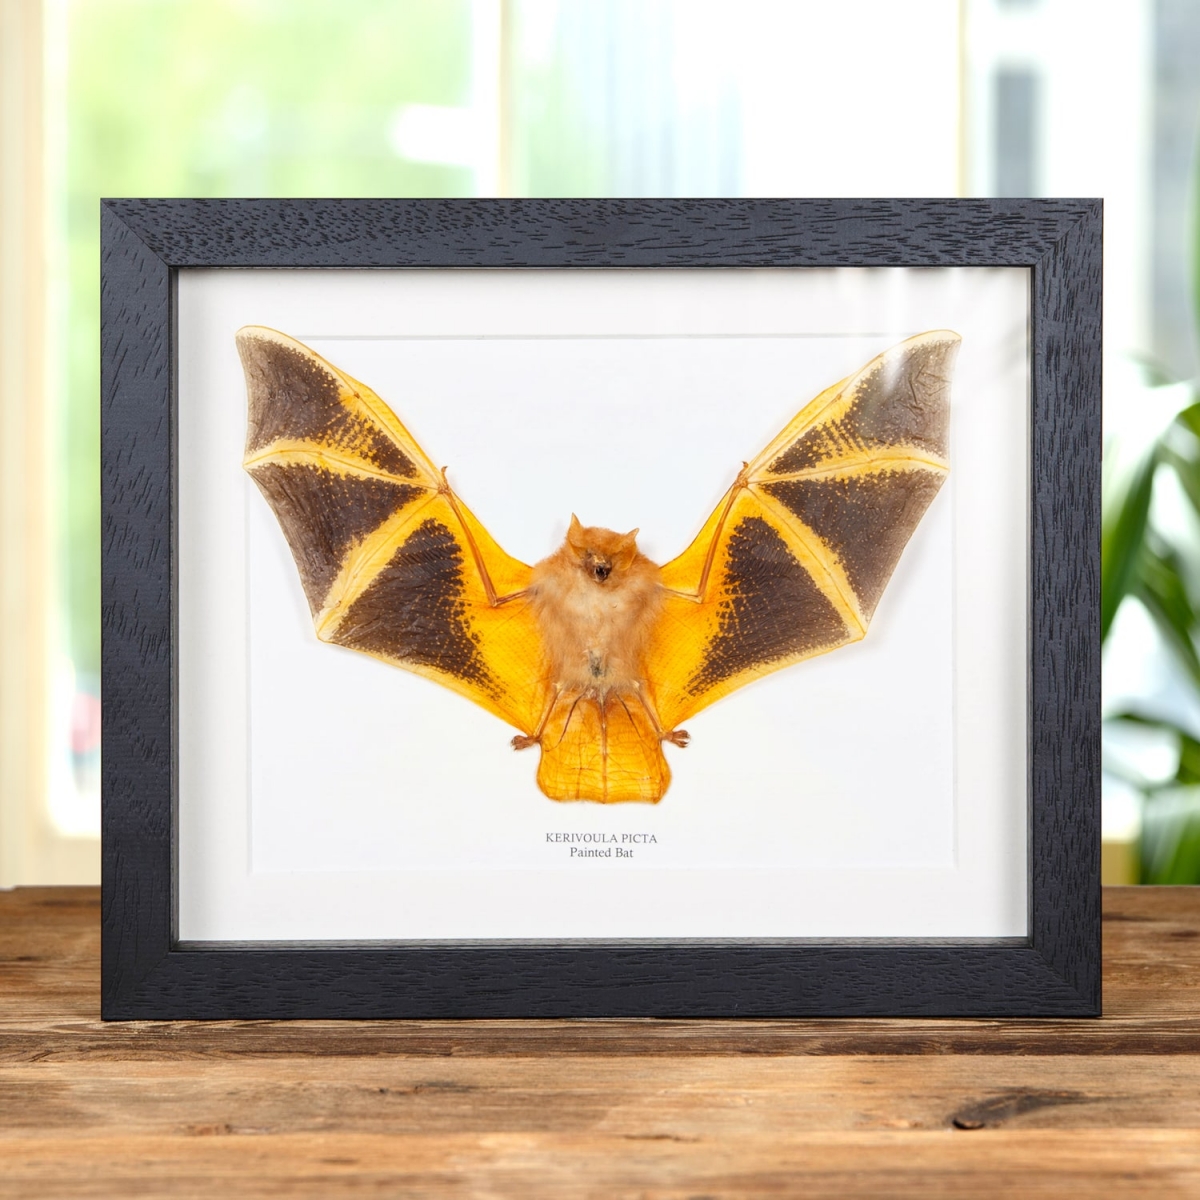 Minibeast Taxidermy Painted Bat in Box Frame (Kerivoula picta)